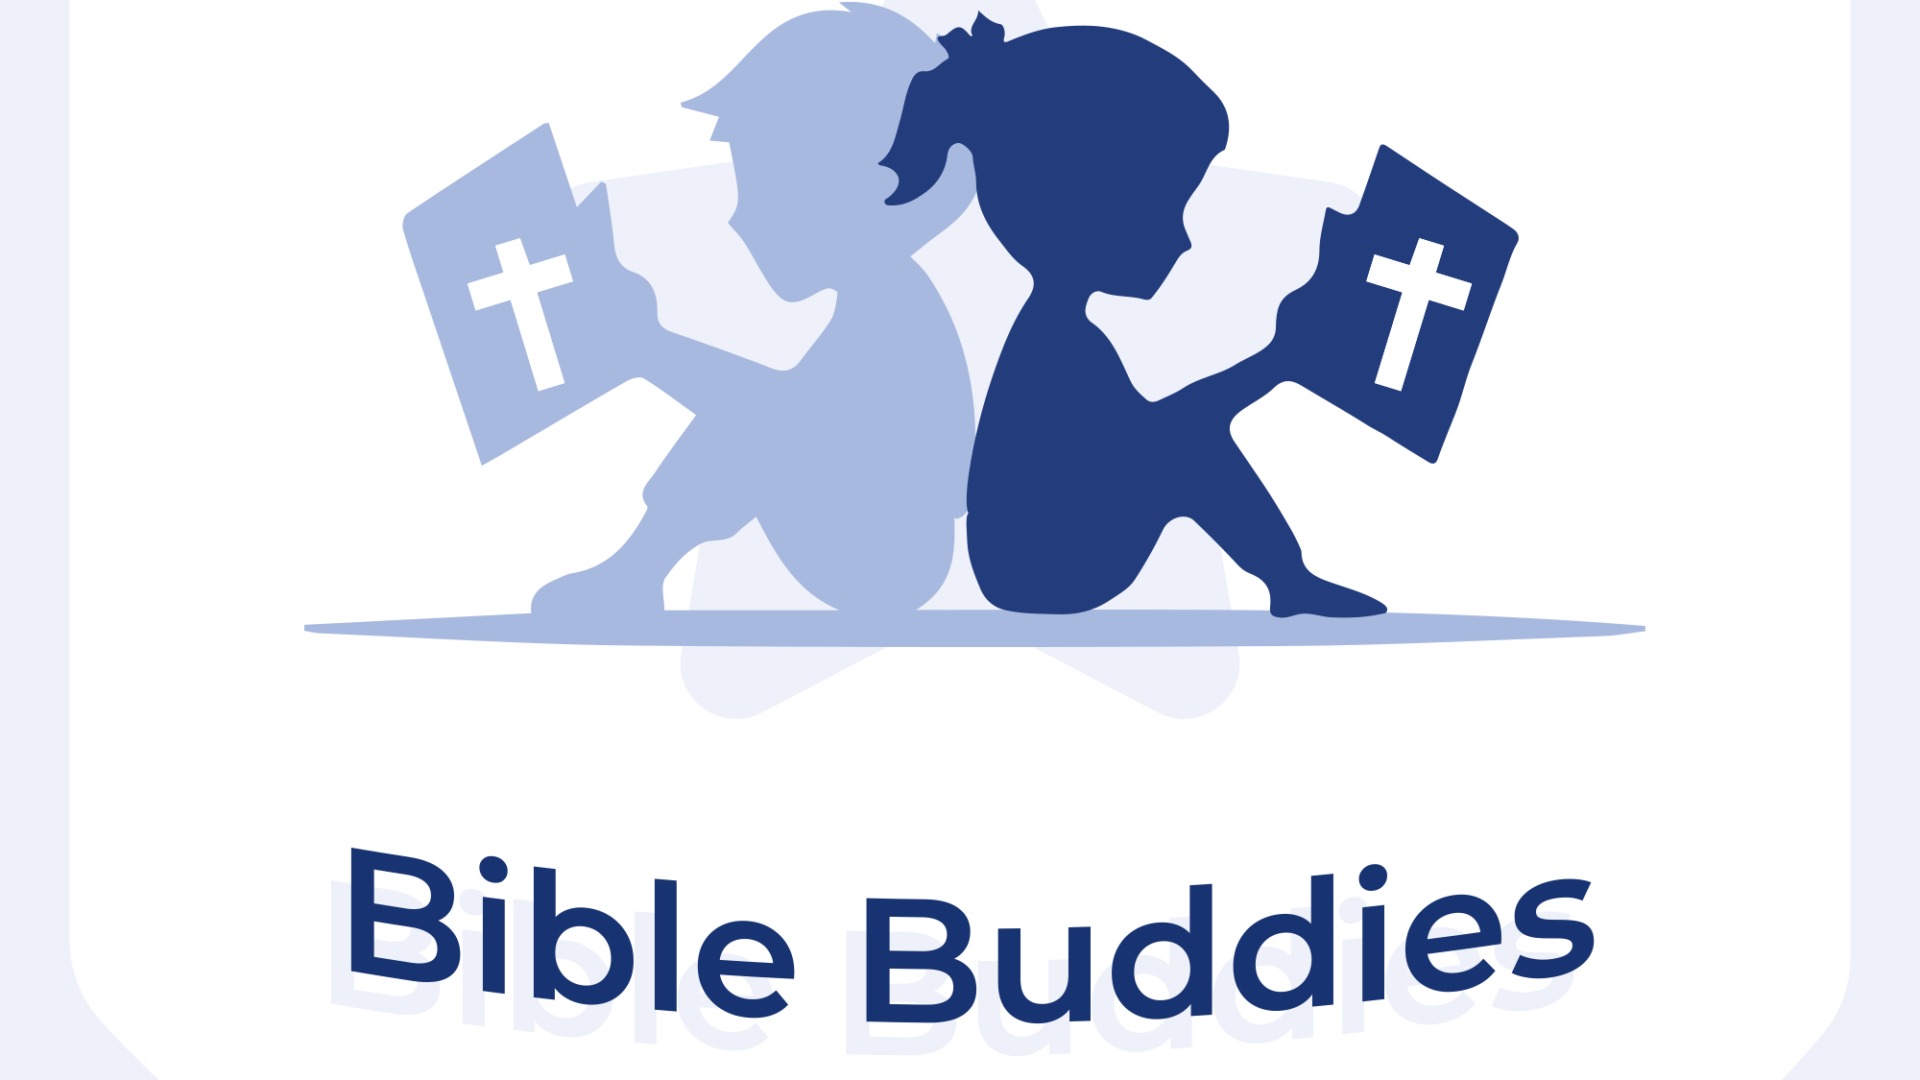 Bible Buddies